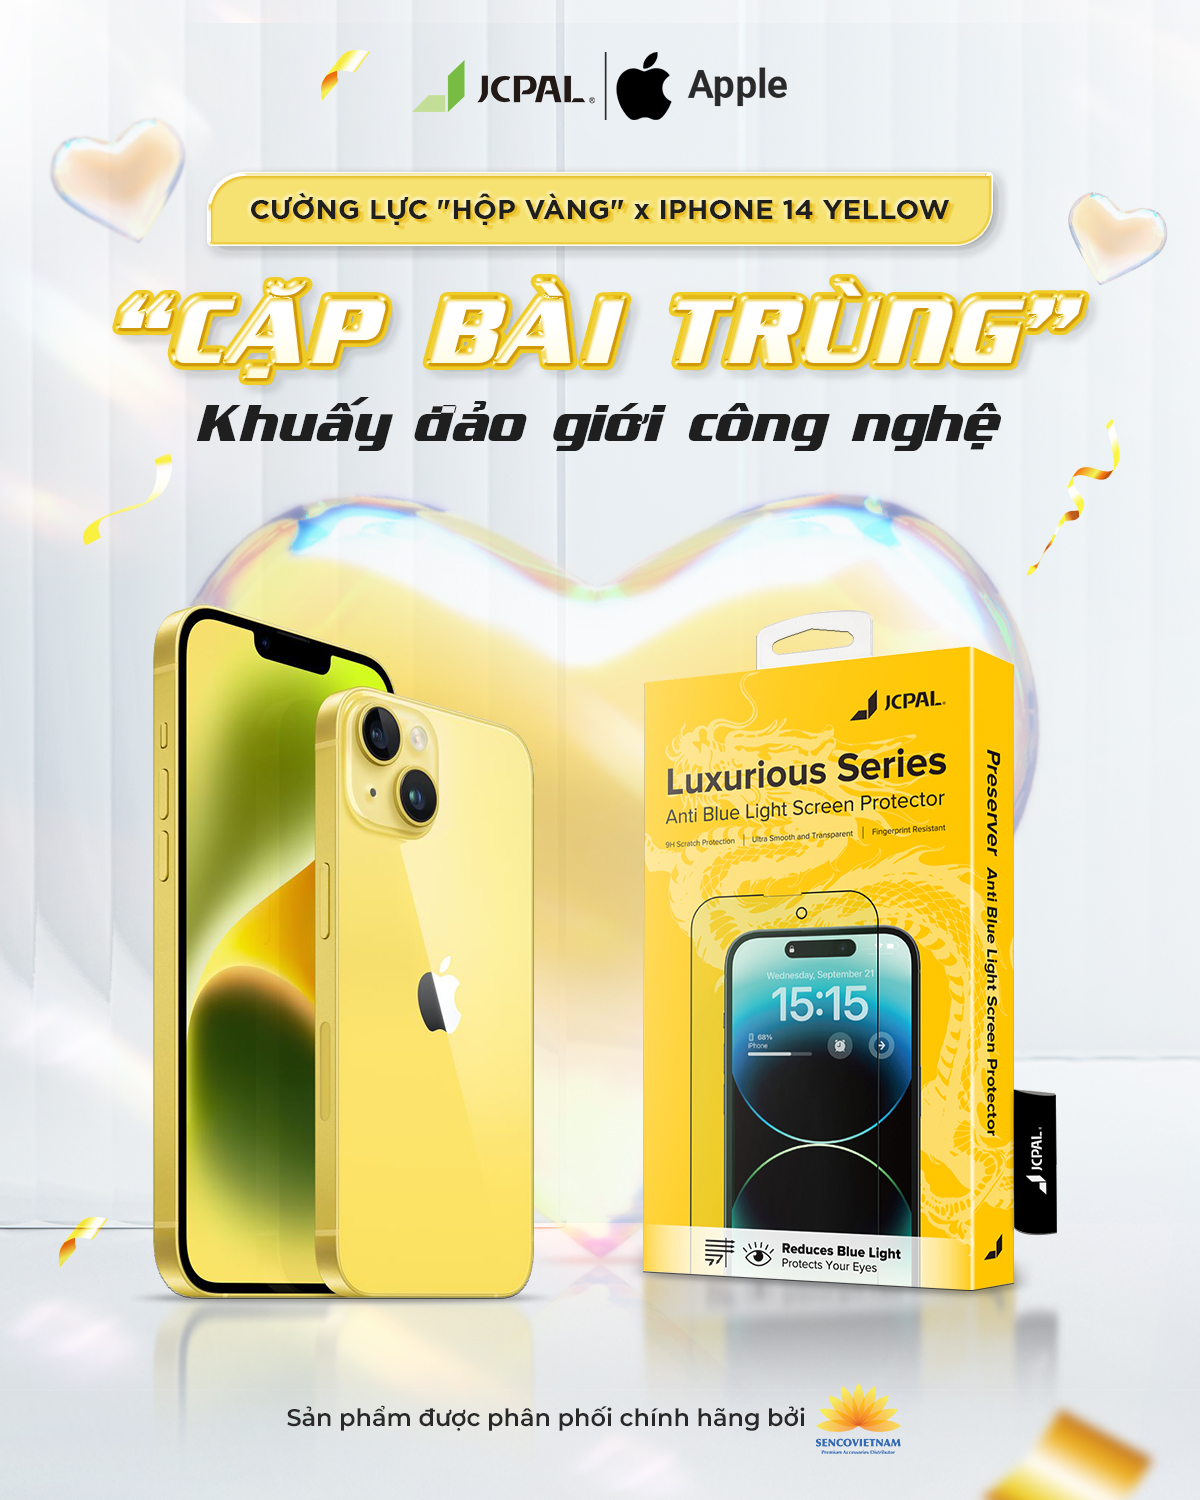 Cường lực "Hộp Vàng" x iPhone 14 Yellow | "Cặp bài trùng" khuấy đảo giới công nghệ